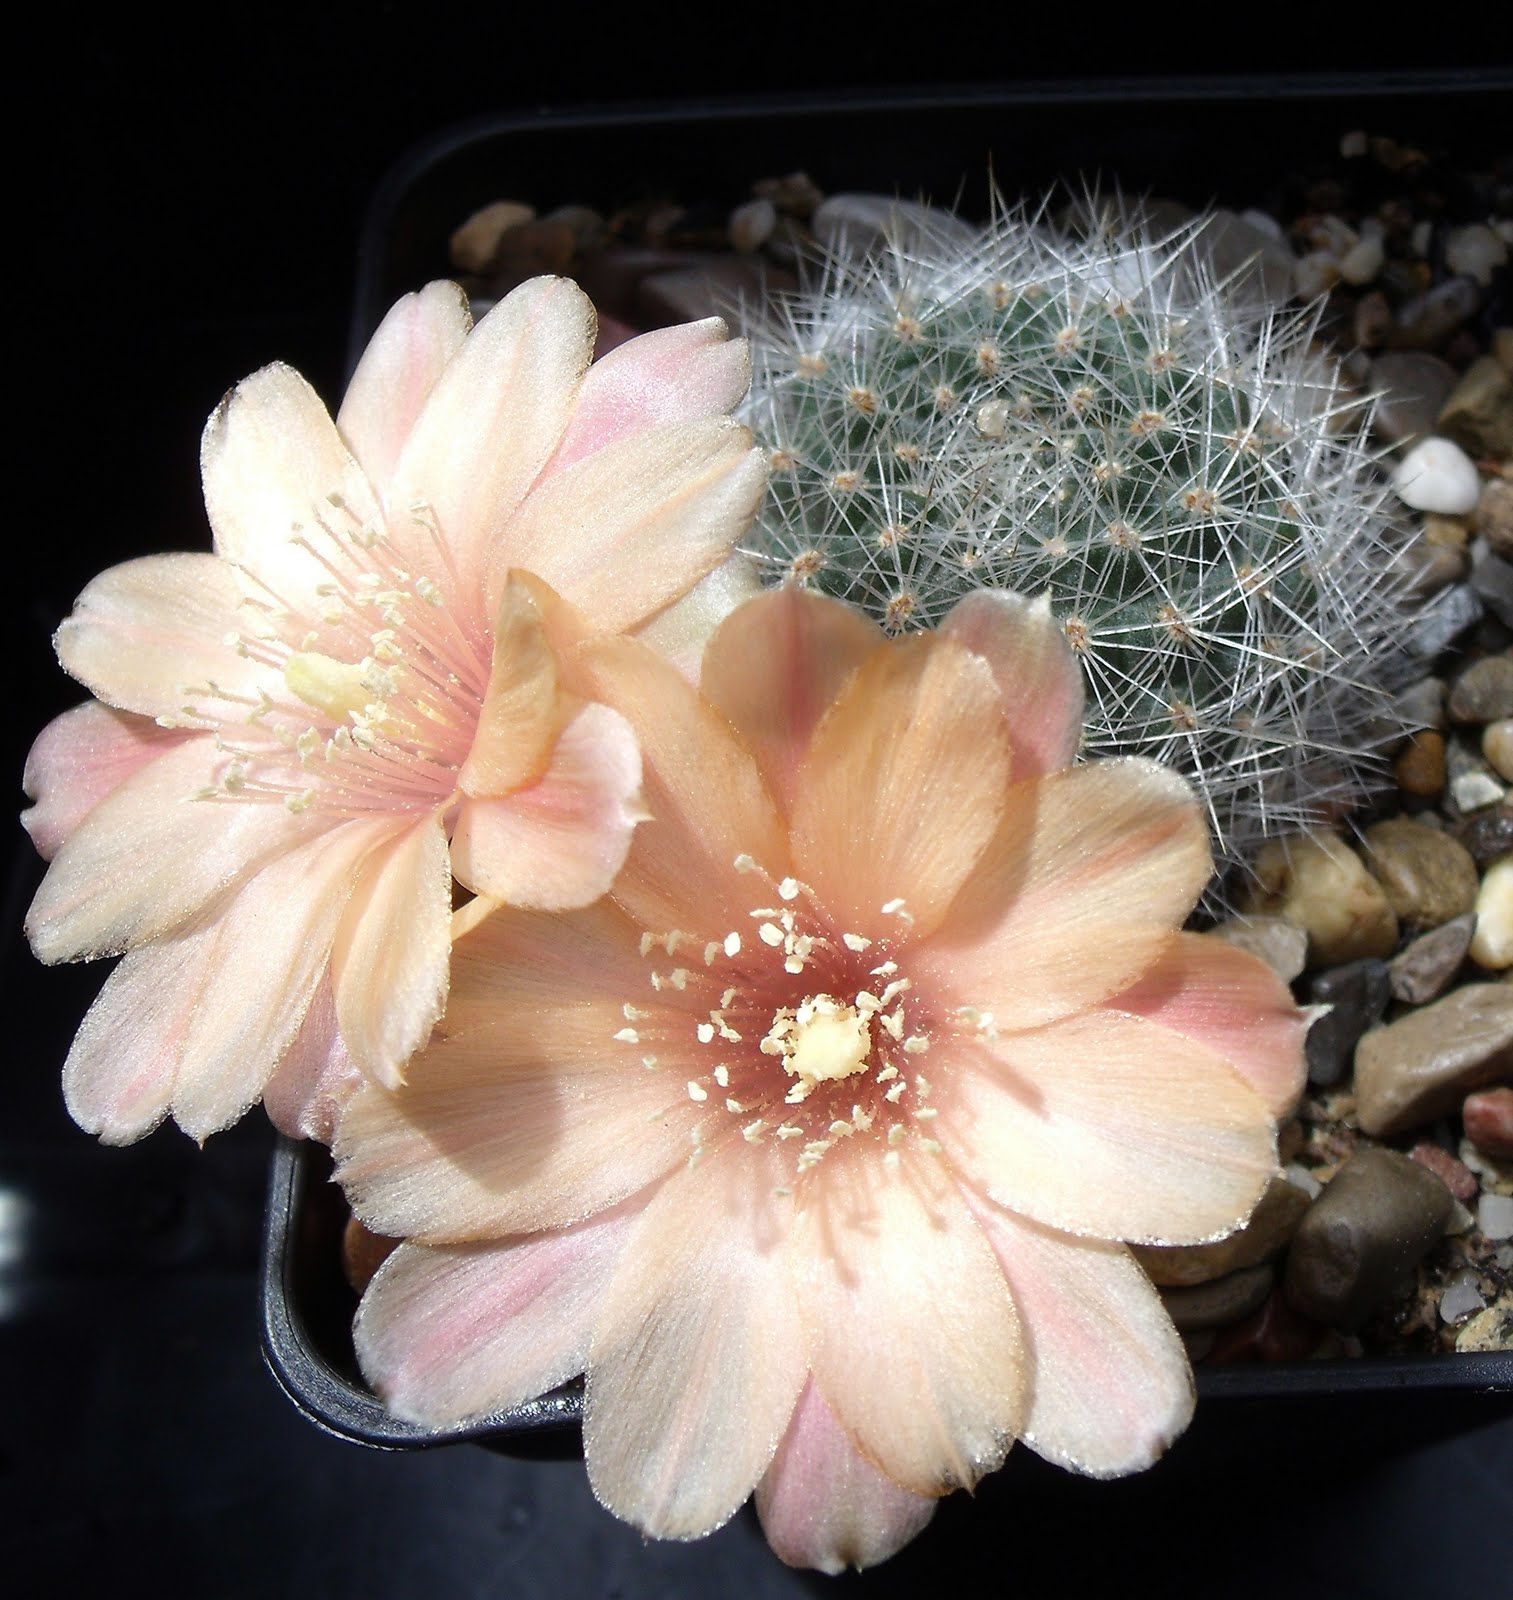 Imagenes De Flores Con Espinas - Imágenes de flores Cactus espinas Flowerjpg ru